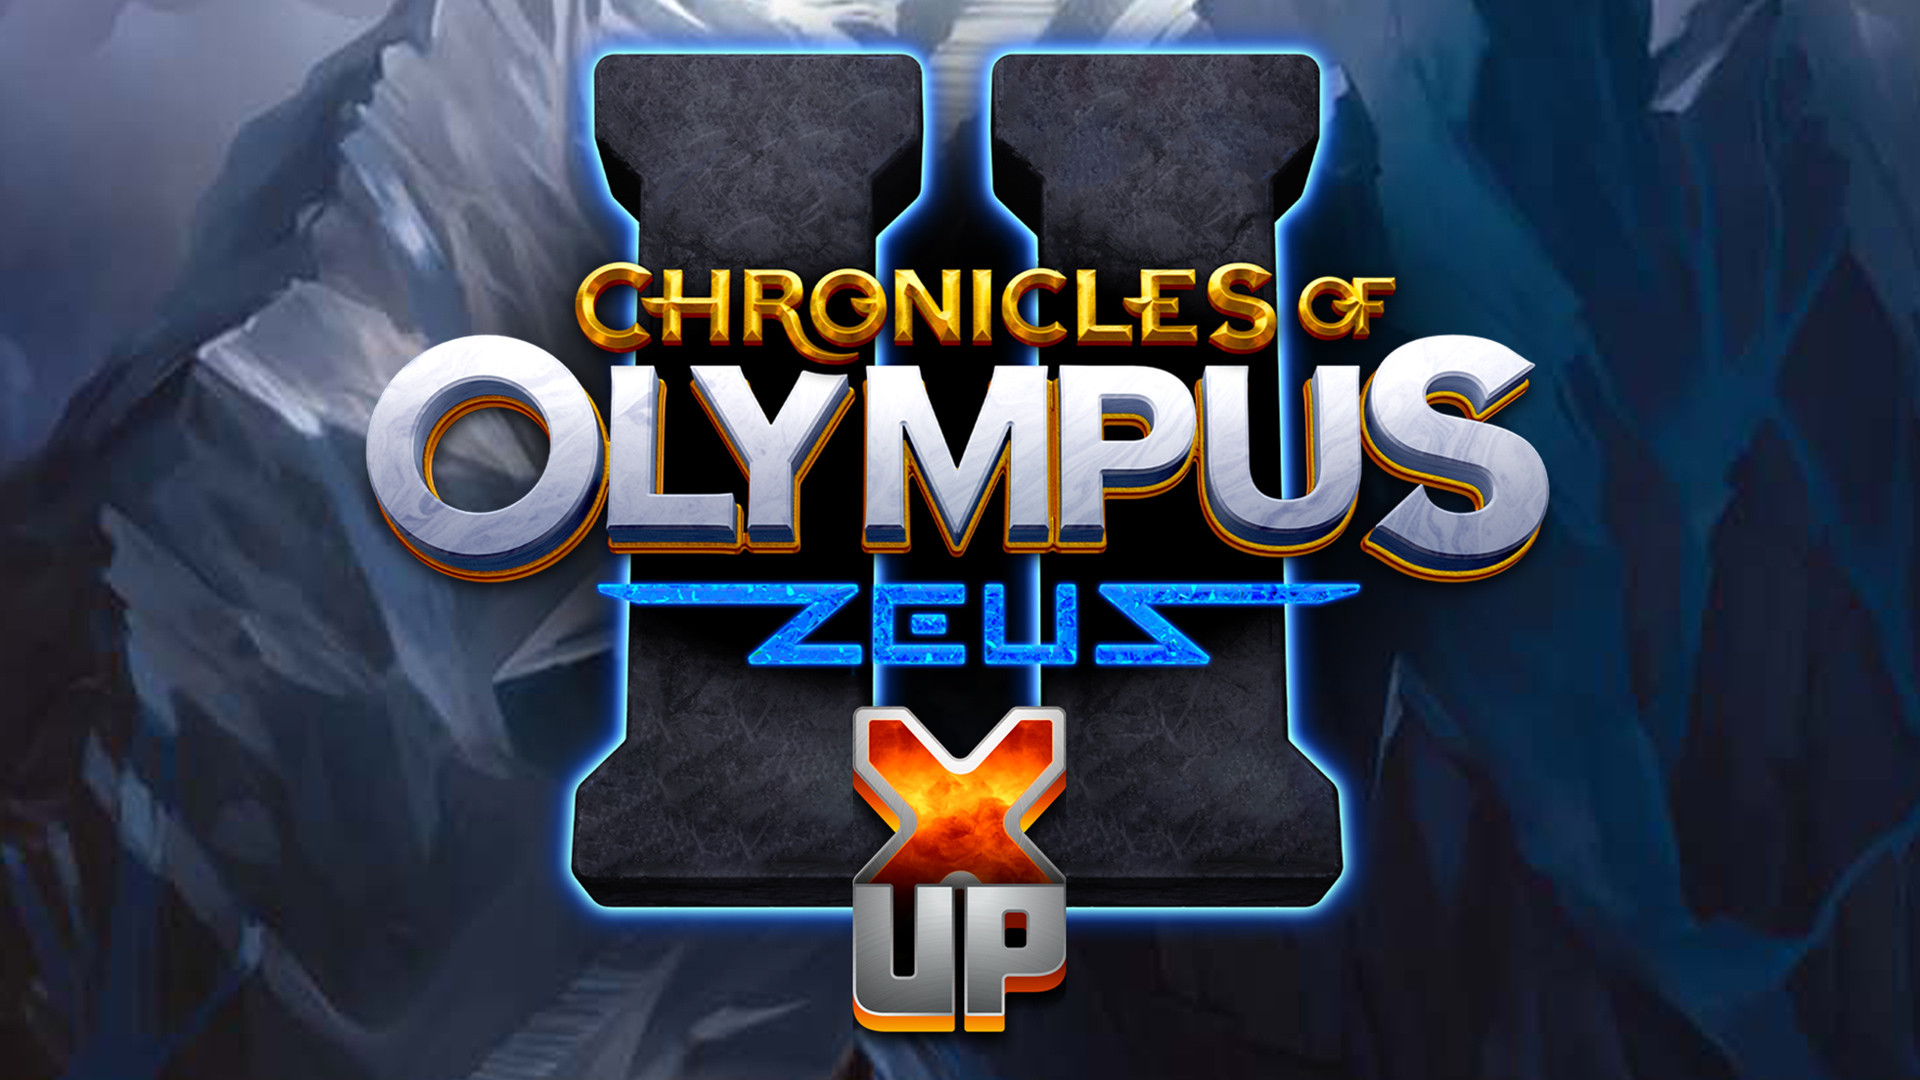 Chronicles of Olympus II X UP - Zeus